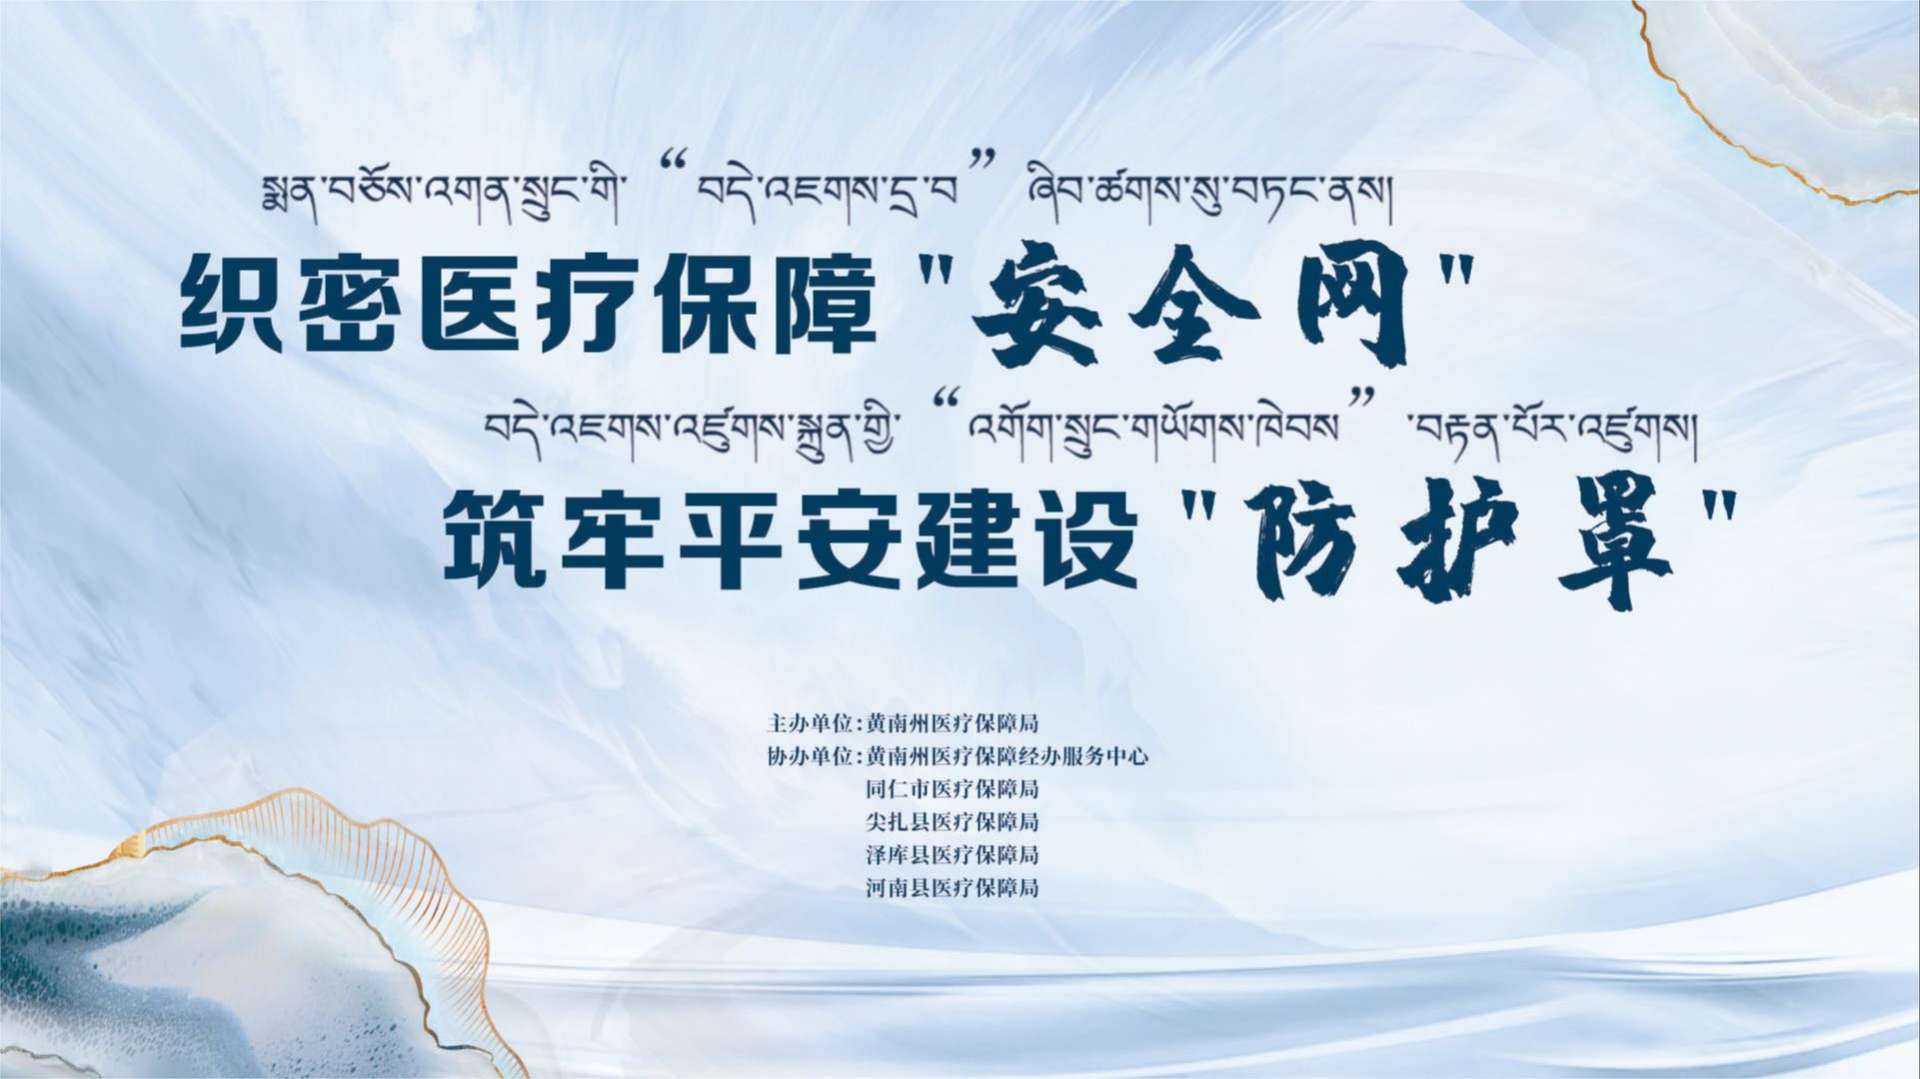 2023年黄南州基本医保全民参保计划集中宣传活动启动仪式-横屏第二版